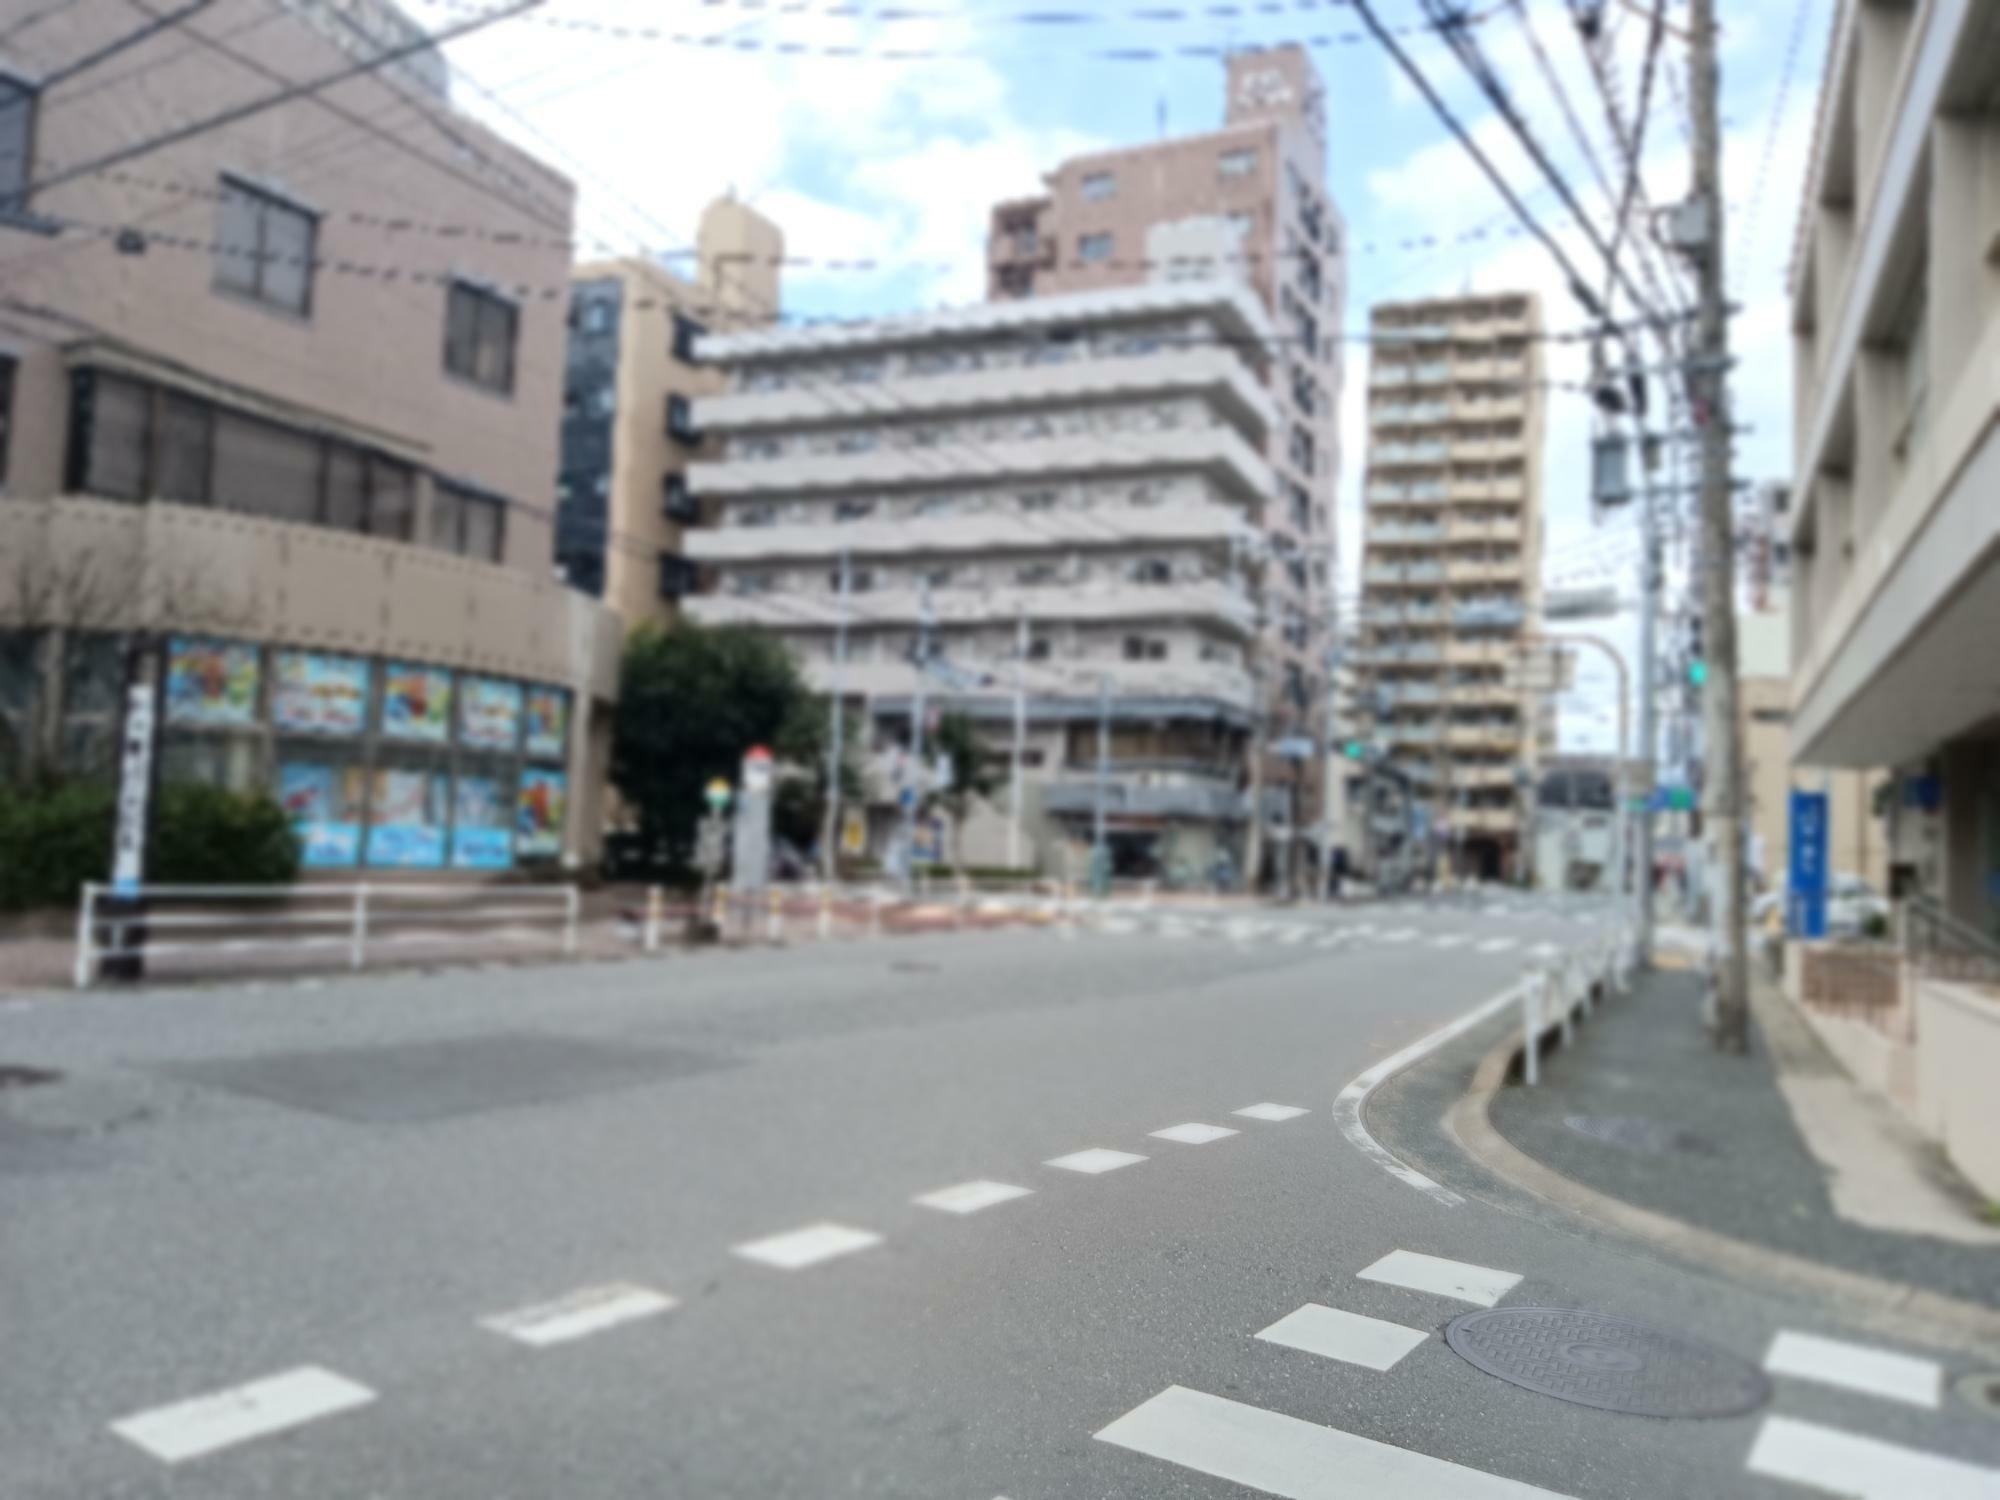 店舗は、福岡市営地下鉄「馬出九大病院前」より徒歩で約3分の距離にあります